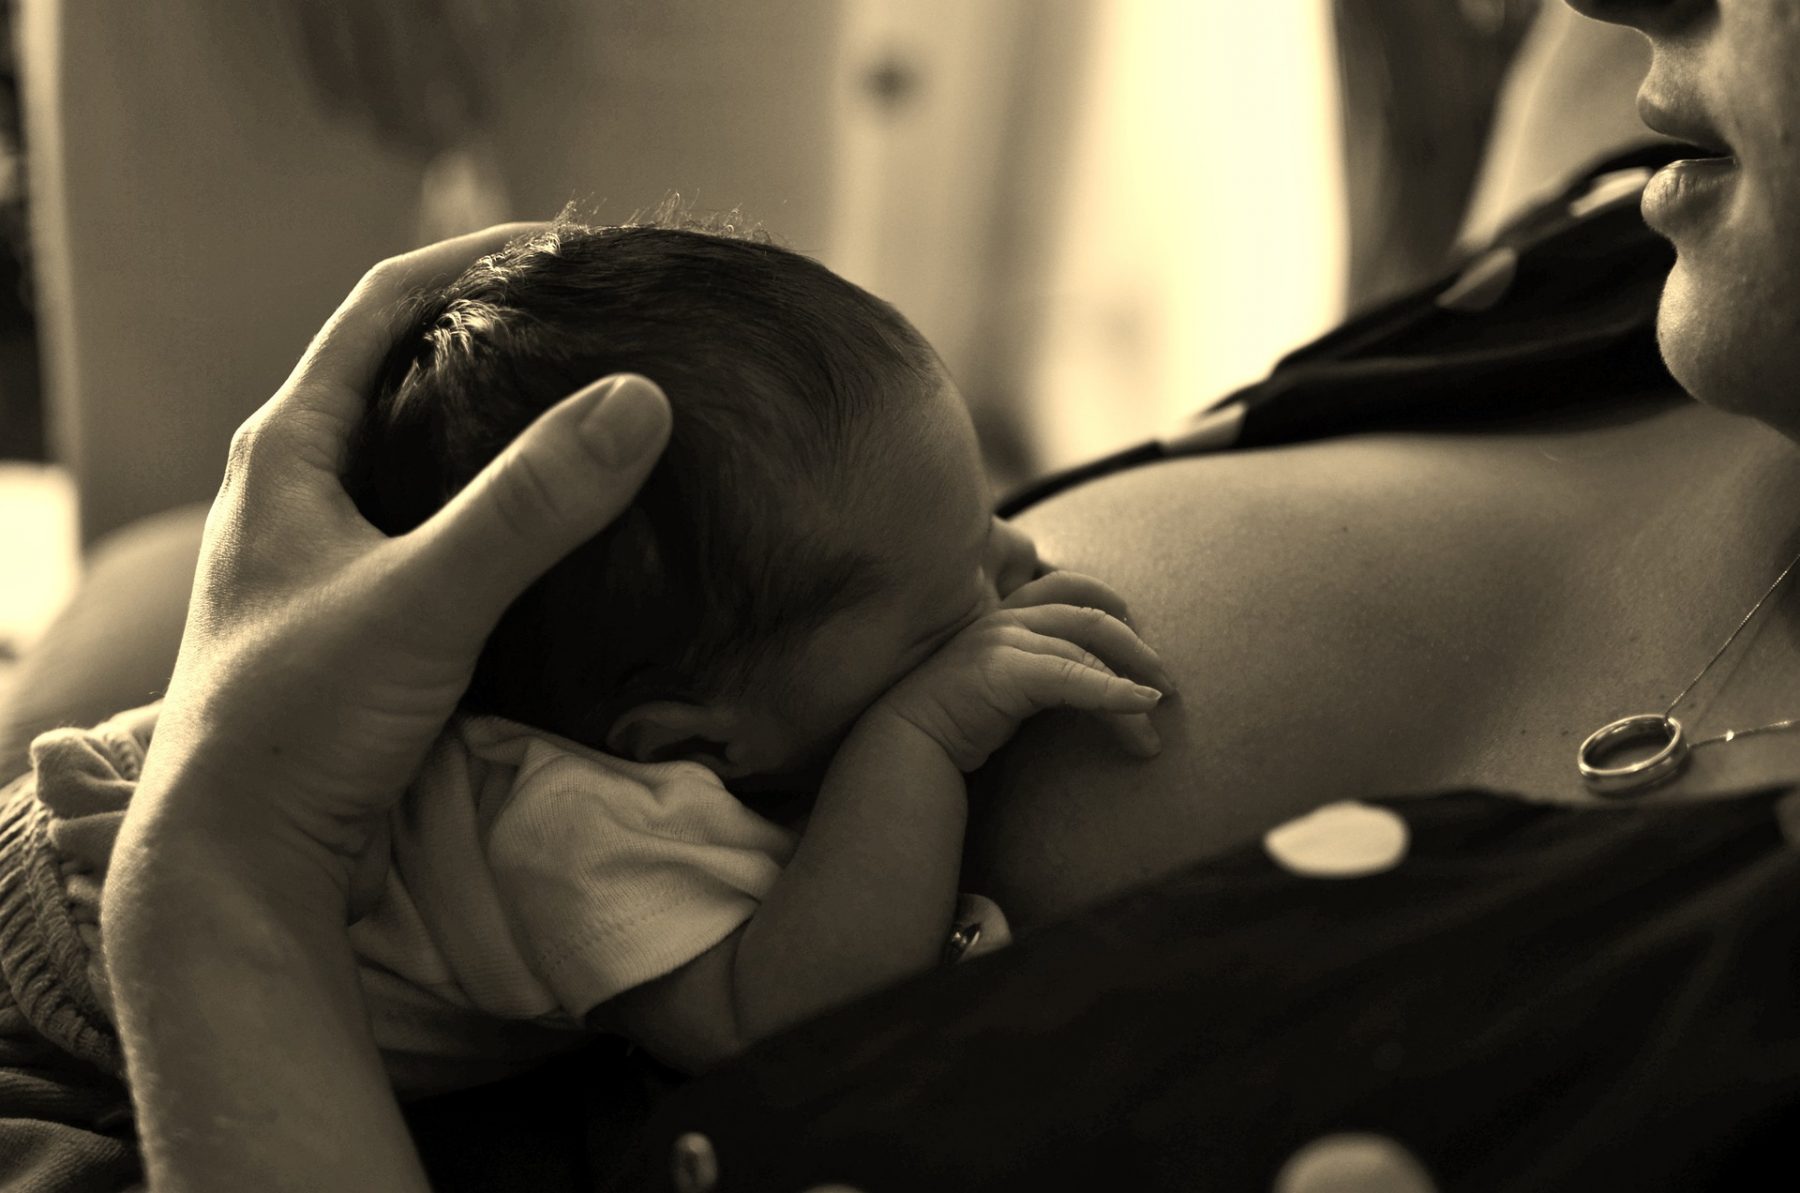 Θηλασμός γνωστική λειτουργία: Ο θηλασμός μπορεί να βοηθήσει τη μητέρα στην πρόληψη της γνωστικής έκπτωσης